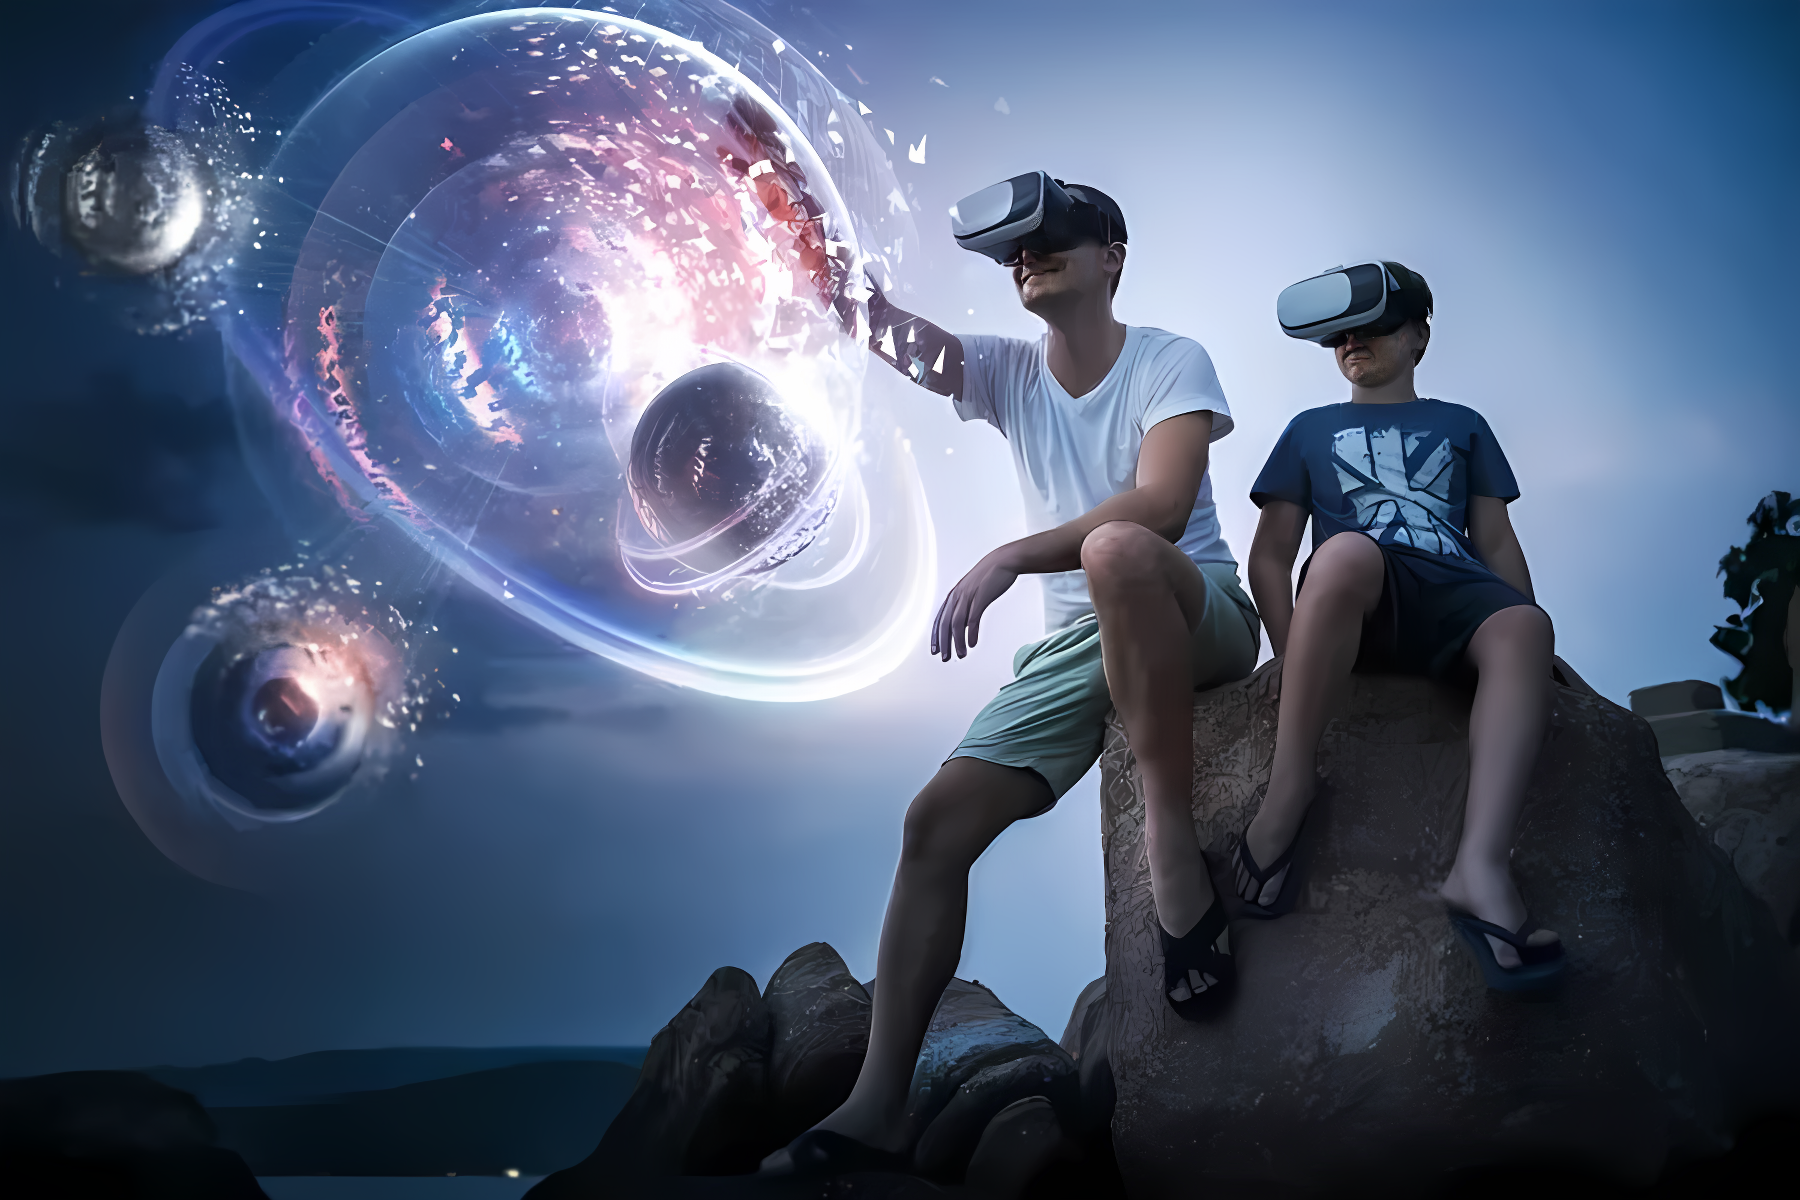 两人戴着虚拟现实头盔坐在岩石上，前方出现太空星球等虚拟图像，周围环境显得昏暗，给人科技与现实交融的感觉。